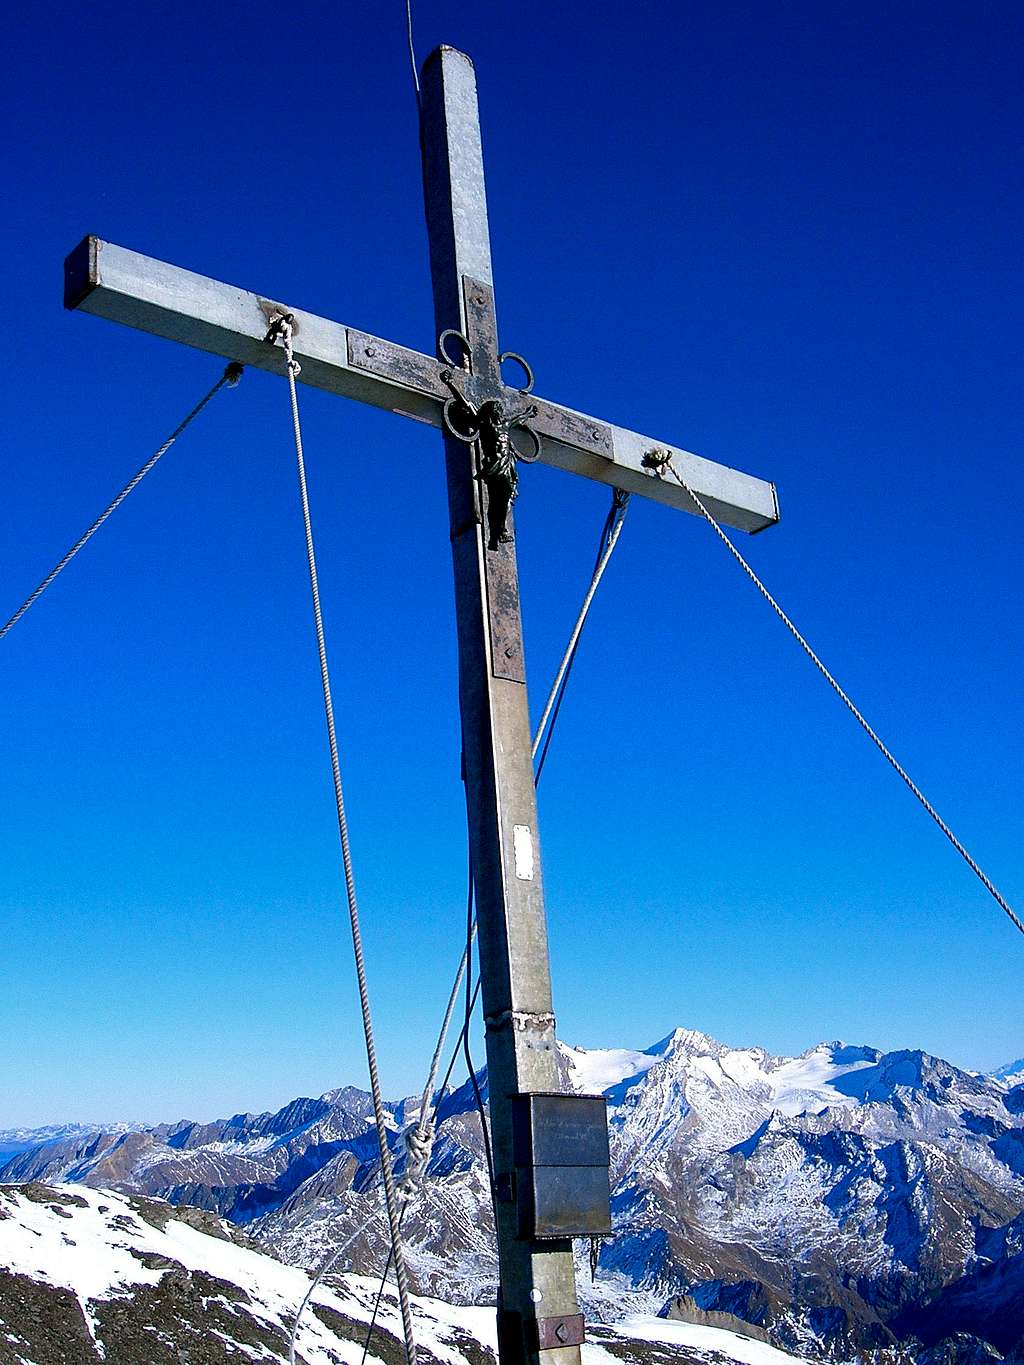 Wilde Kreuzspitze summit cross